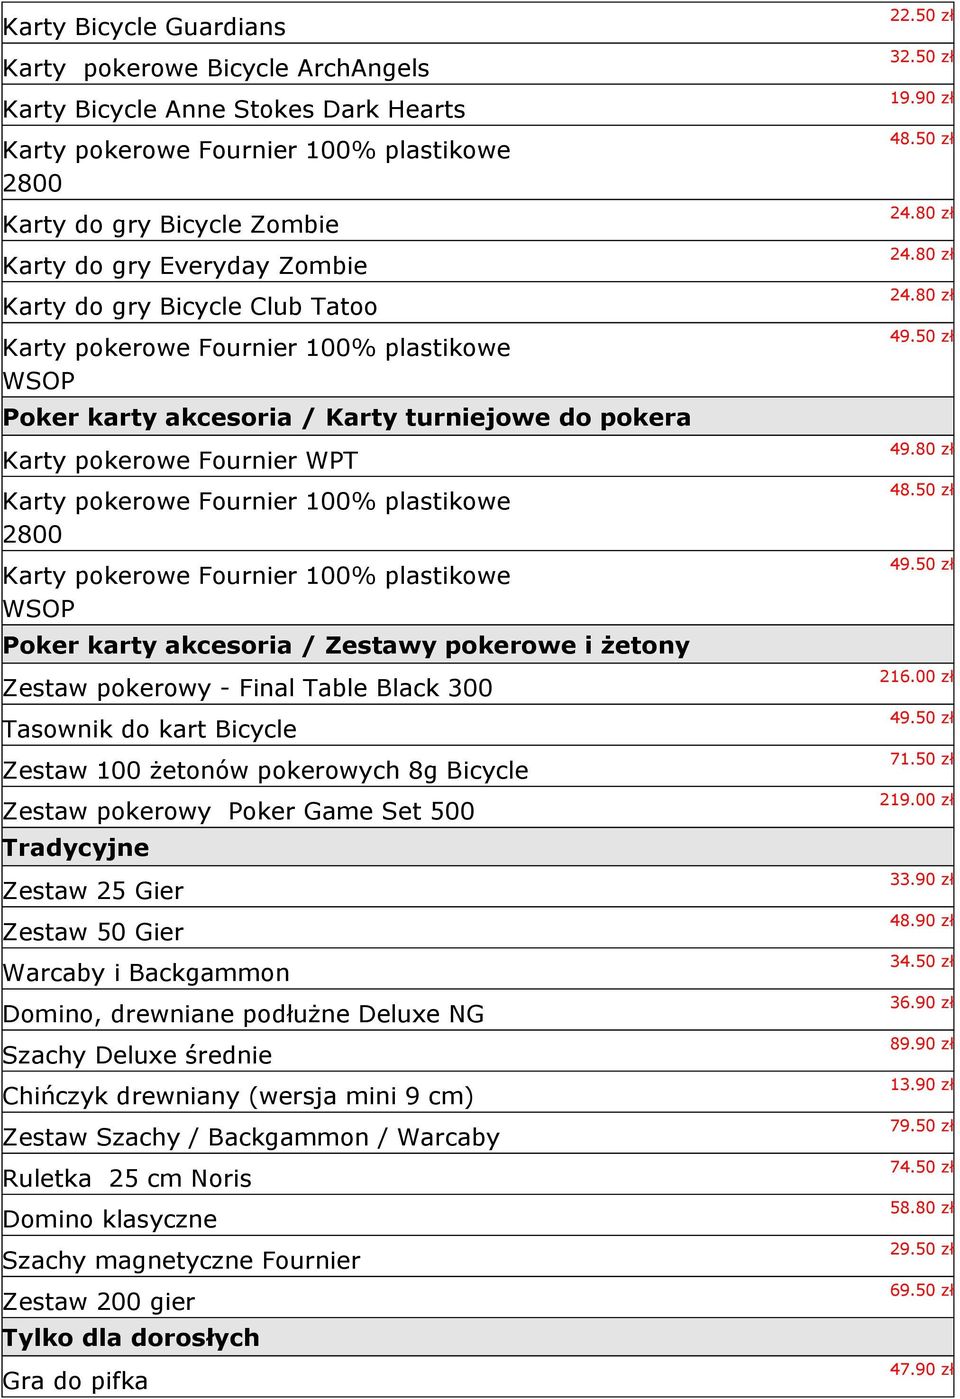 2800 Karty pokerowe Fournier 100% plastikowe WSOP Poker karty akcesoria / Zestawy pokerowe i żetony Zestaw pokerowy - Final Table Black 300 Tasownik do kart Bicycle Zestaw 100 żetonów pokerowych 8g